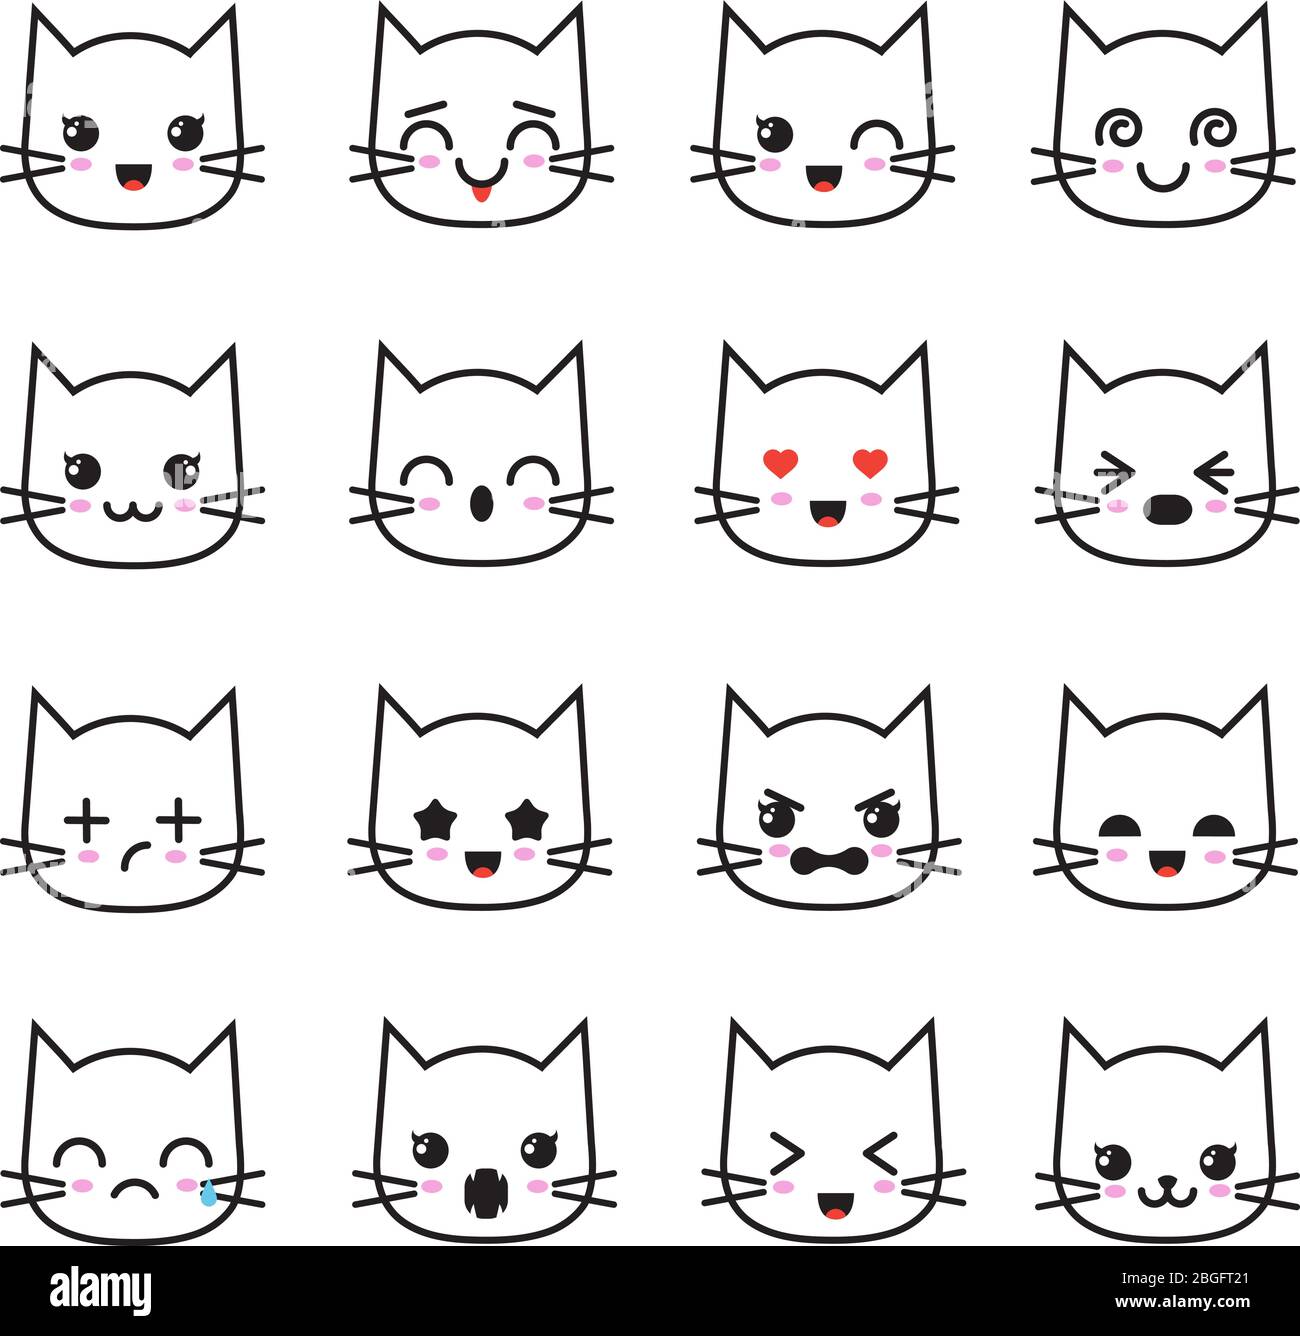 Niedliche Kätzchen kawaii Emoticon Kollektion. Lustige weiße Katze Emoji Vektor Avatare. Charakter Cartoon Katze Gesicht, kawaii Avatar Emoticon Illustration Stock Vektor